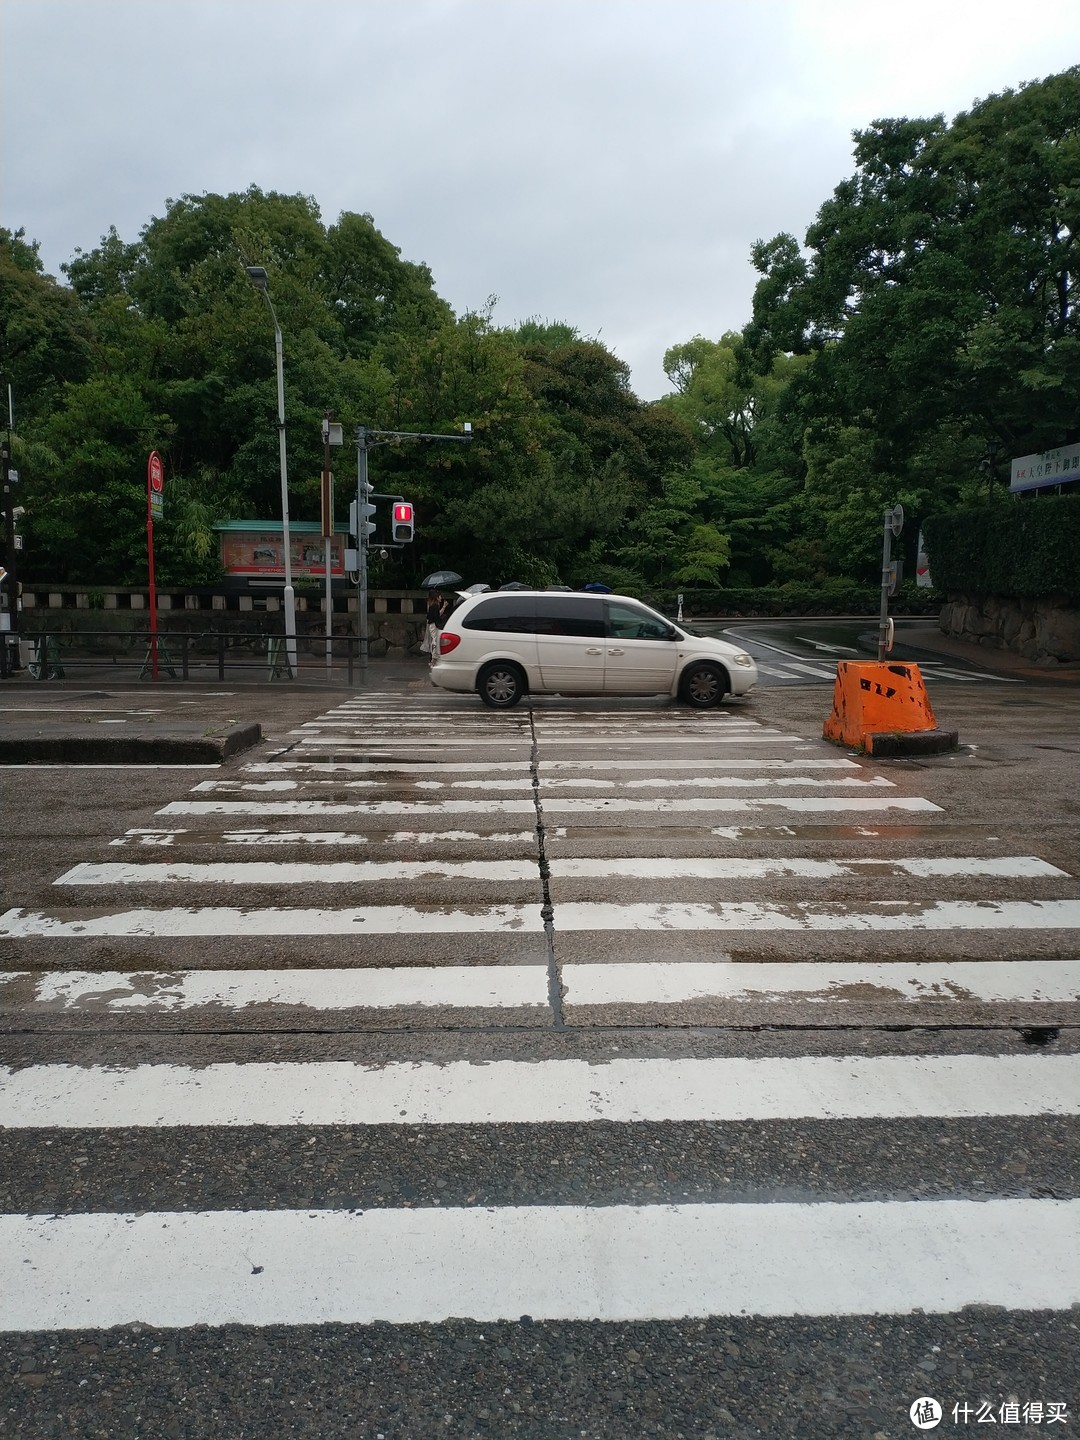  出了站往前走一点，过了人行道就是热田神宫了。